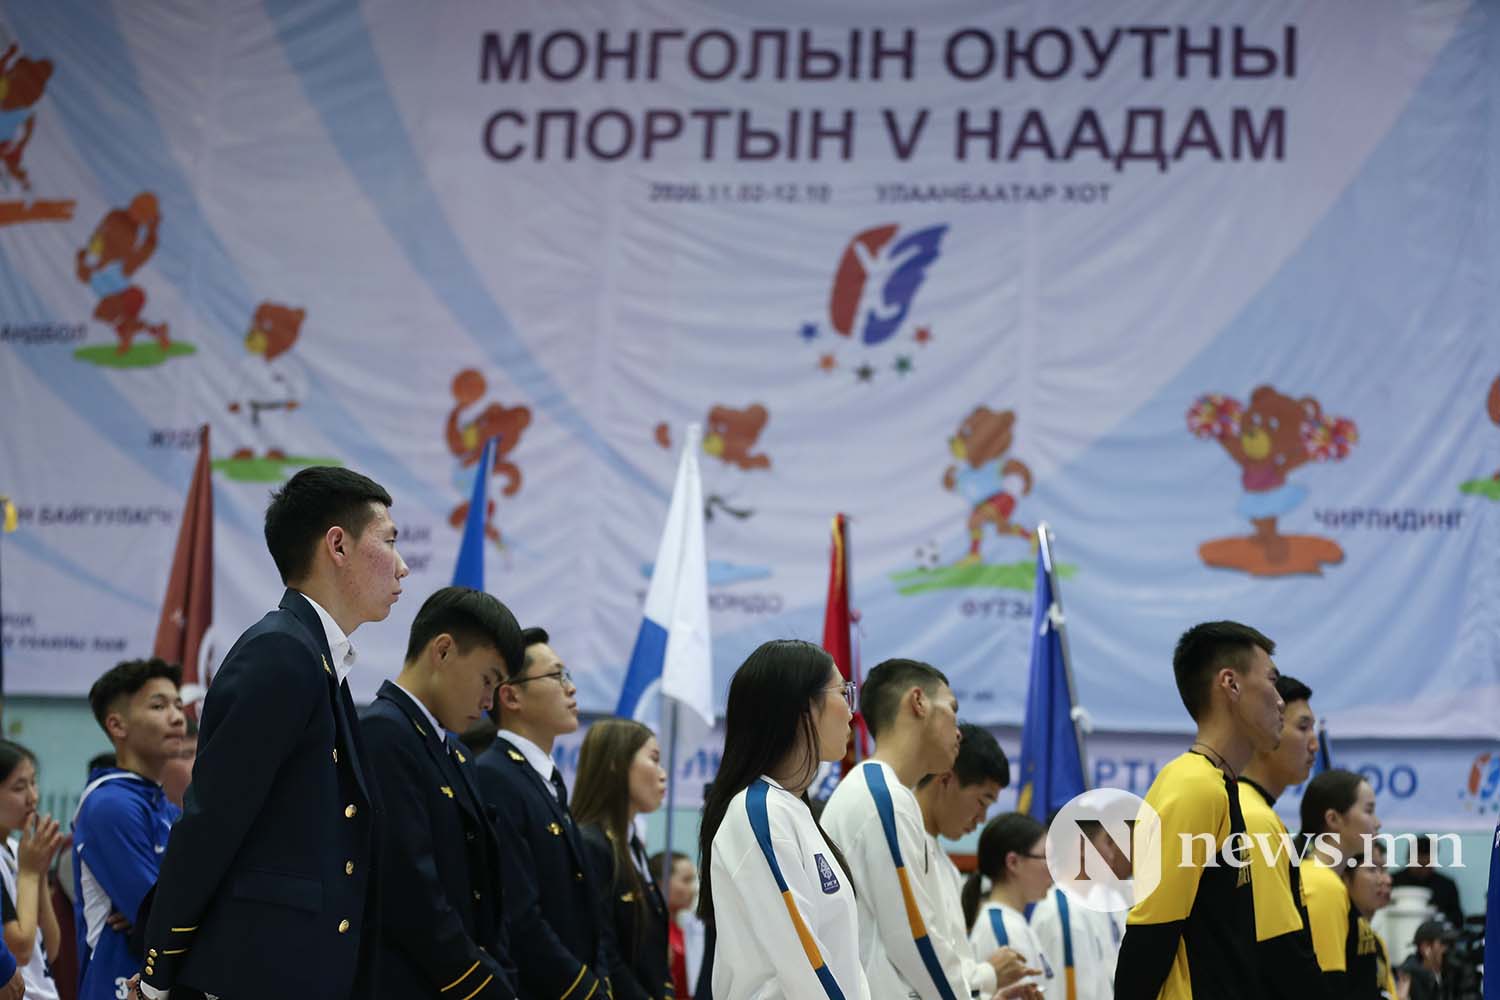 Монголын оюутны спортын 5-р наадам 2020 (23)